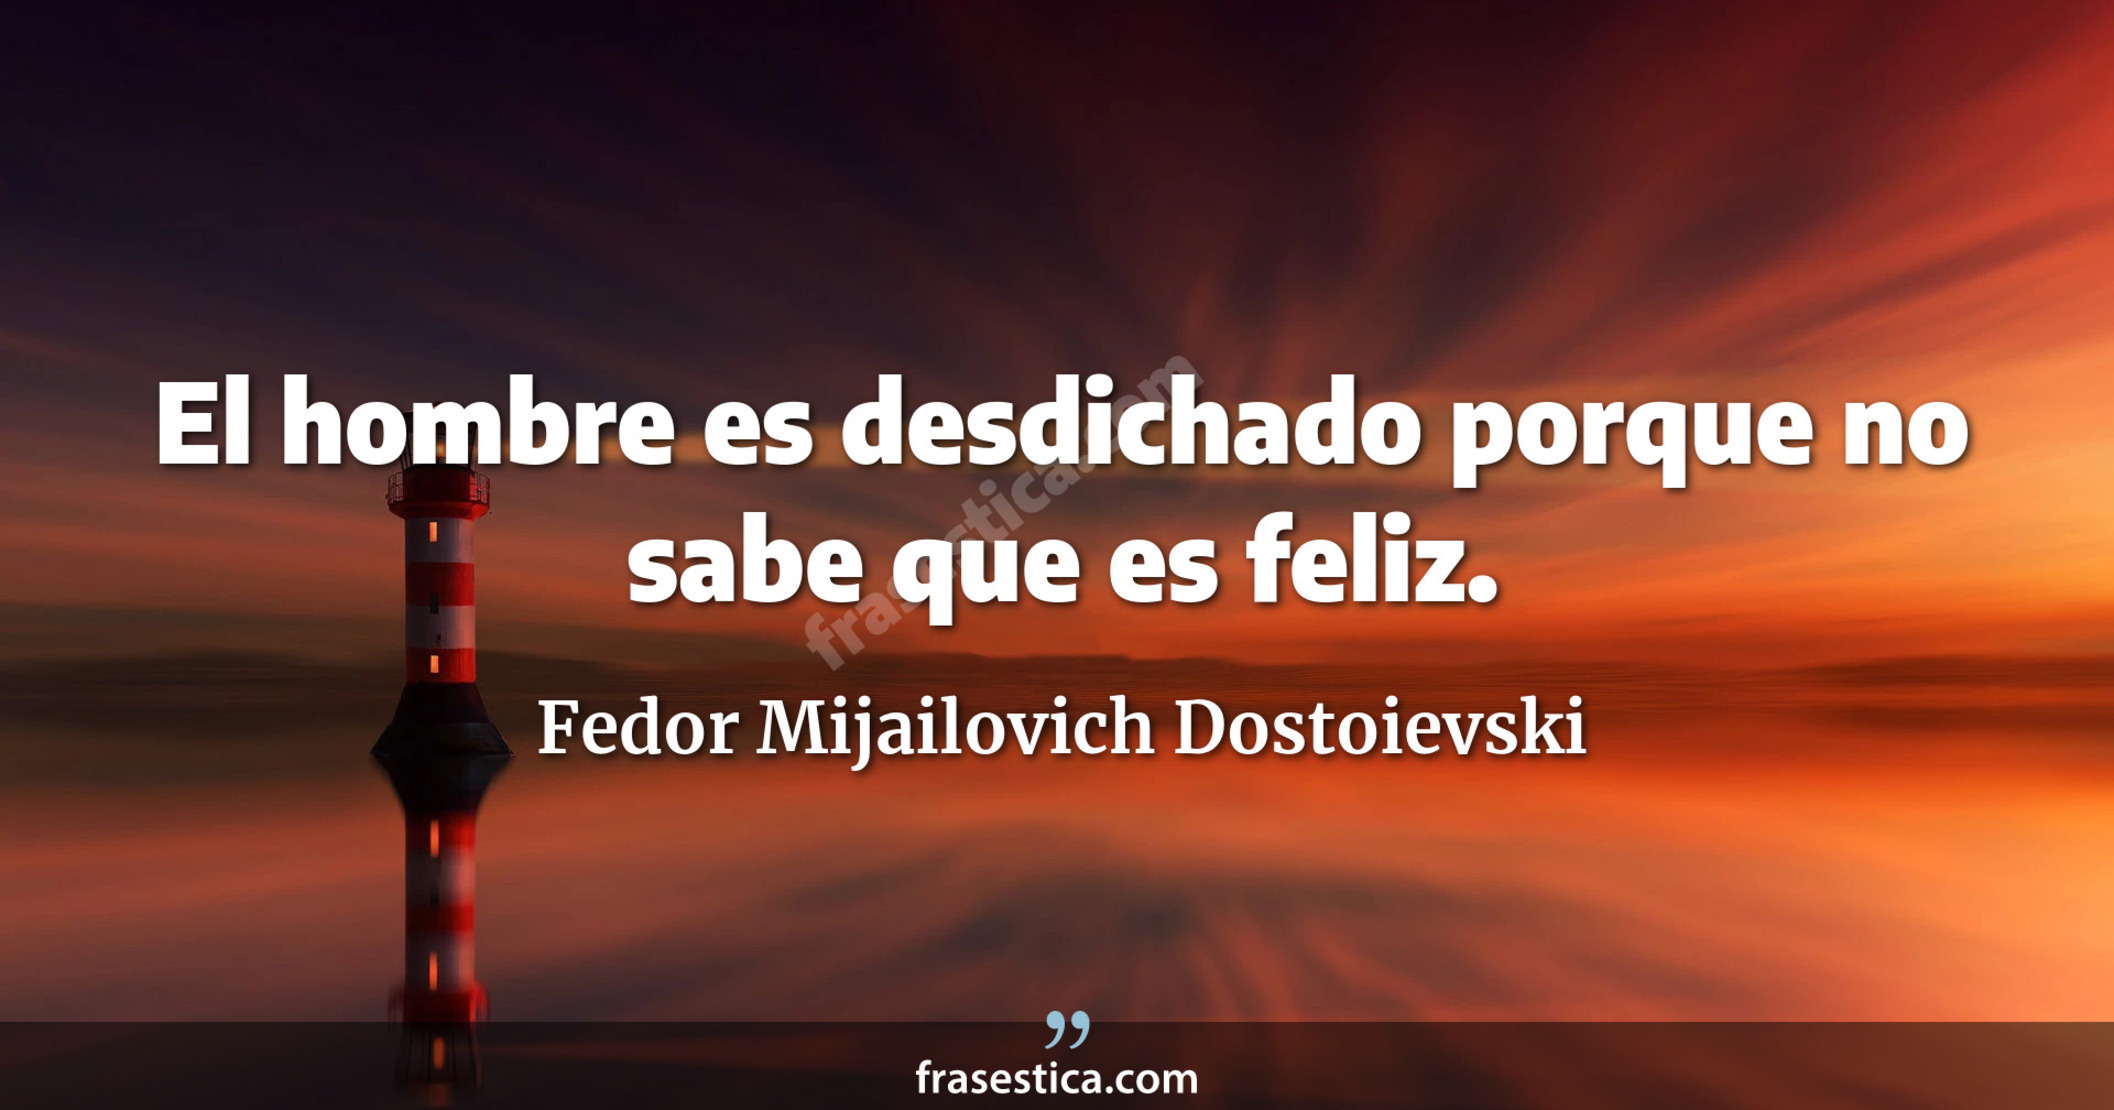 El hombre es desdichado porque no sabe que es feliz. - Fedor Mijailovich Dostoievski